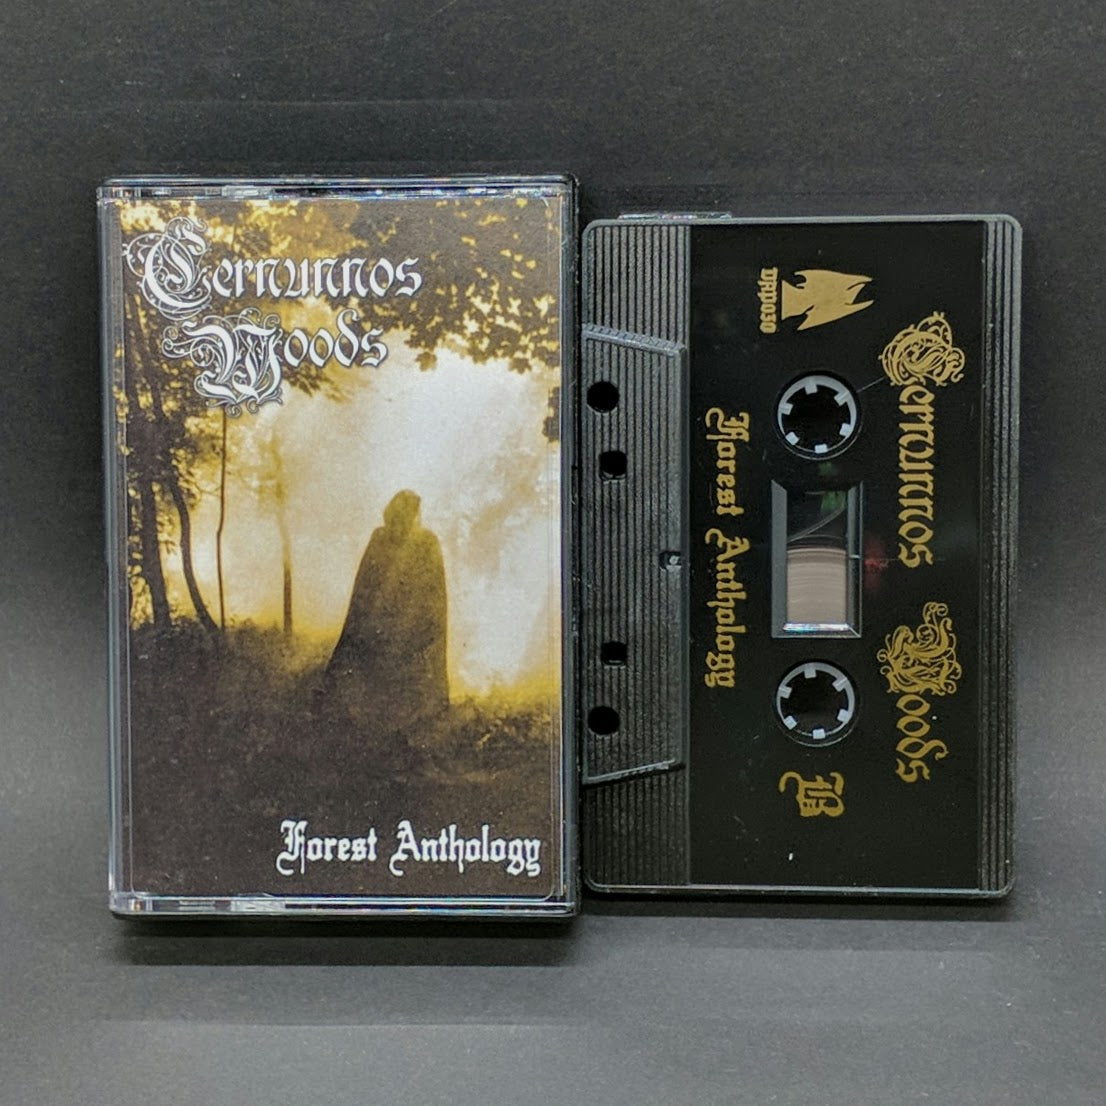 CERNUNNOS WOODS "Forest Anthology" Cassette Tape